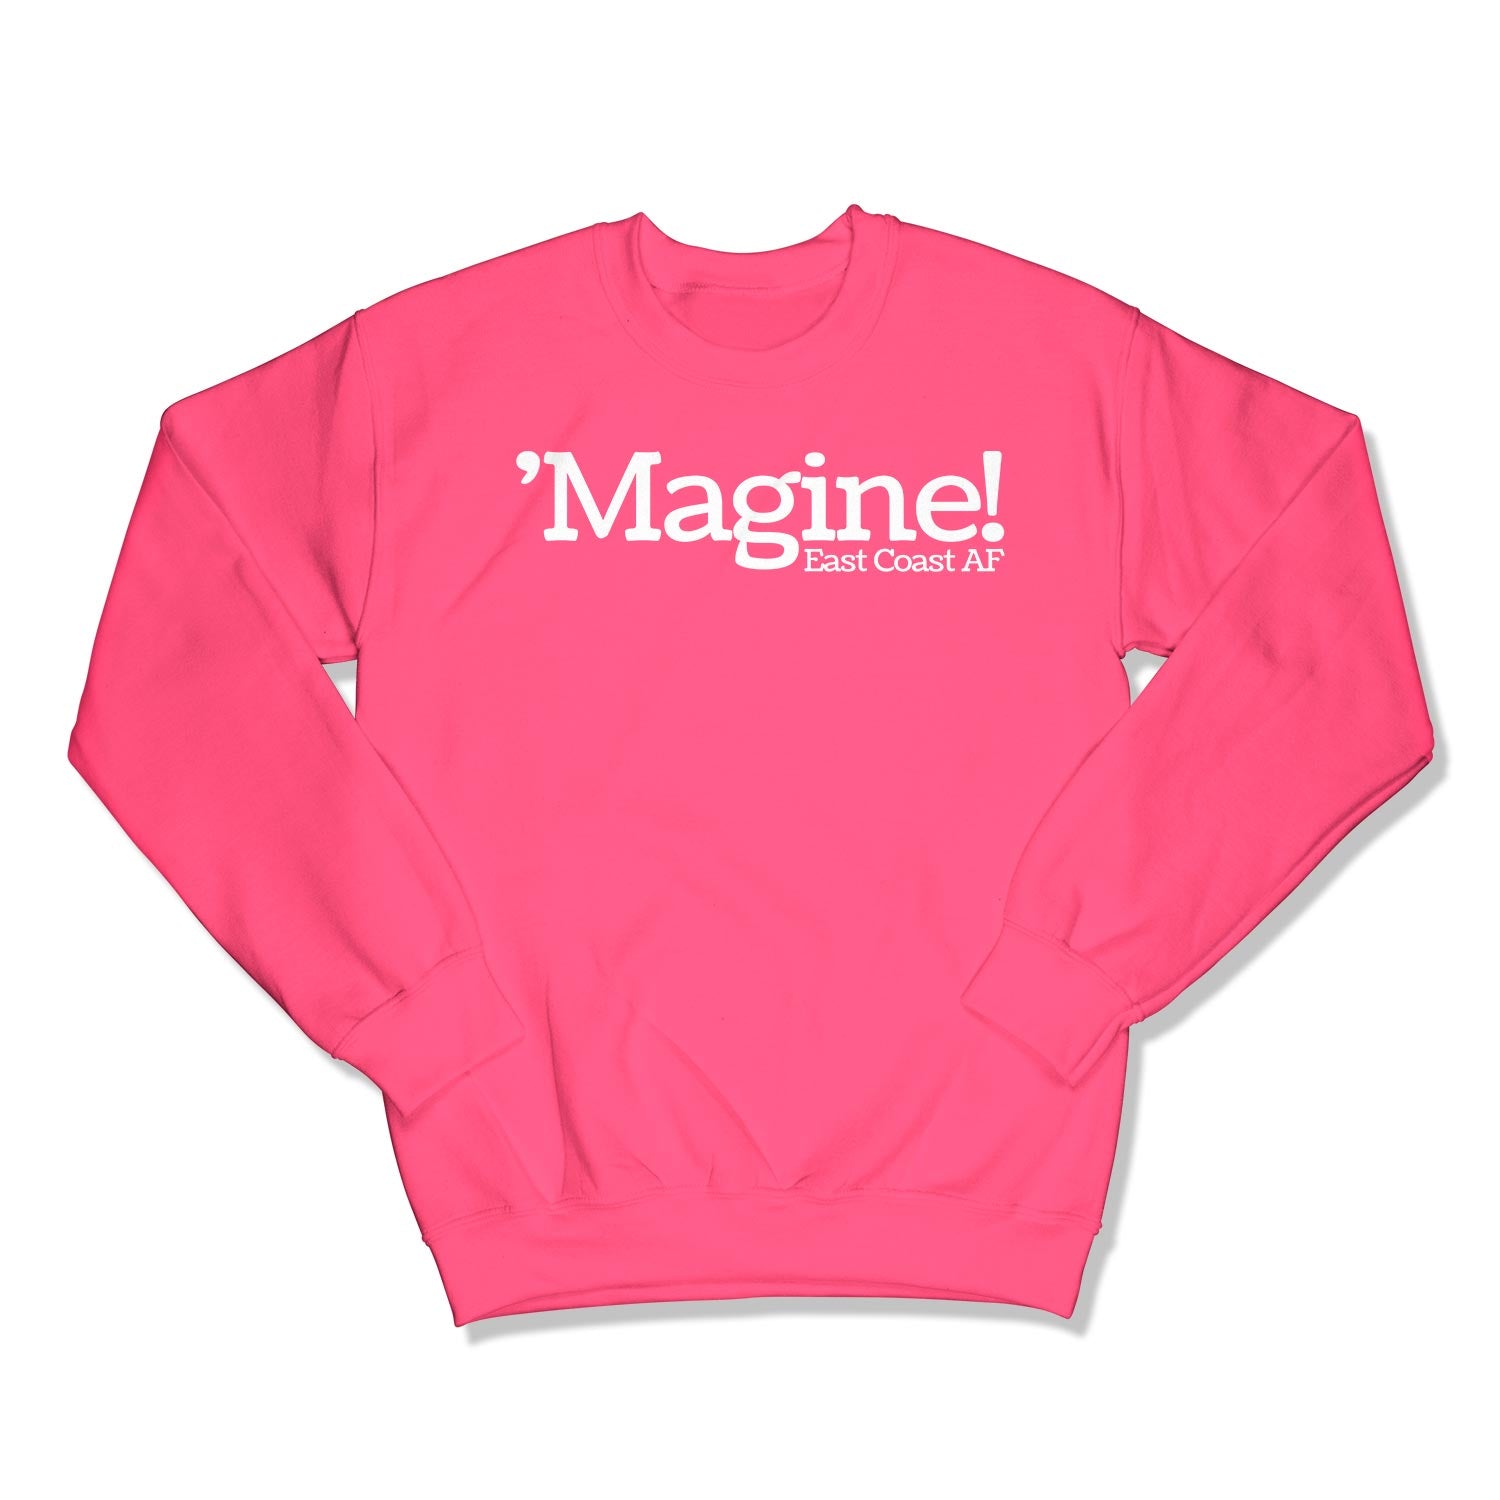 'Magine! Unisex Crewneck Sweatshirt in Color: Safety Pink - East Coast AF Apparel